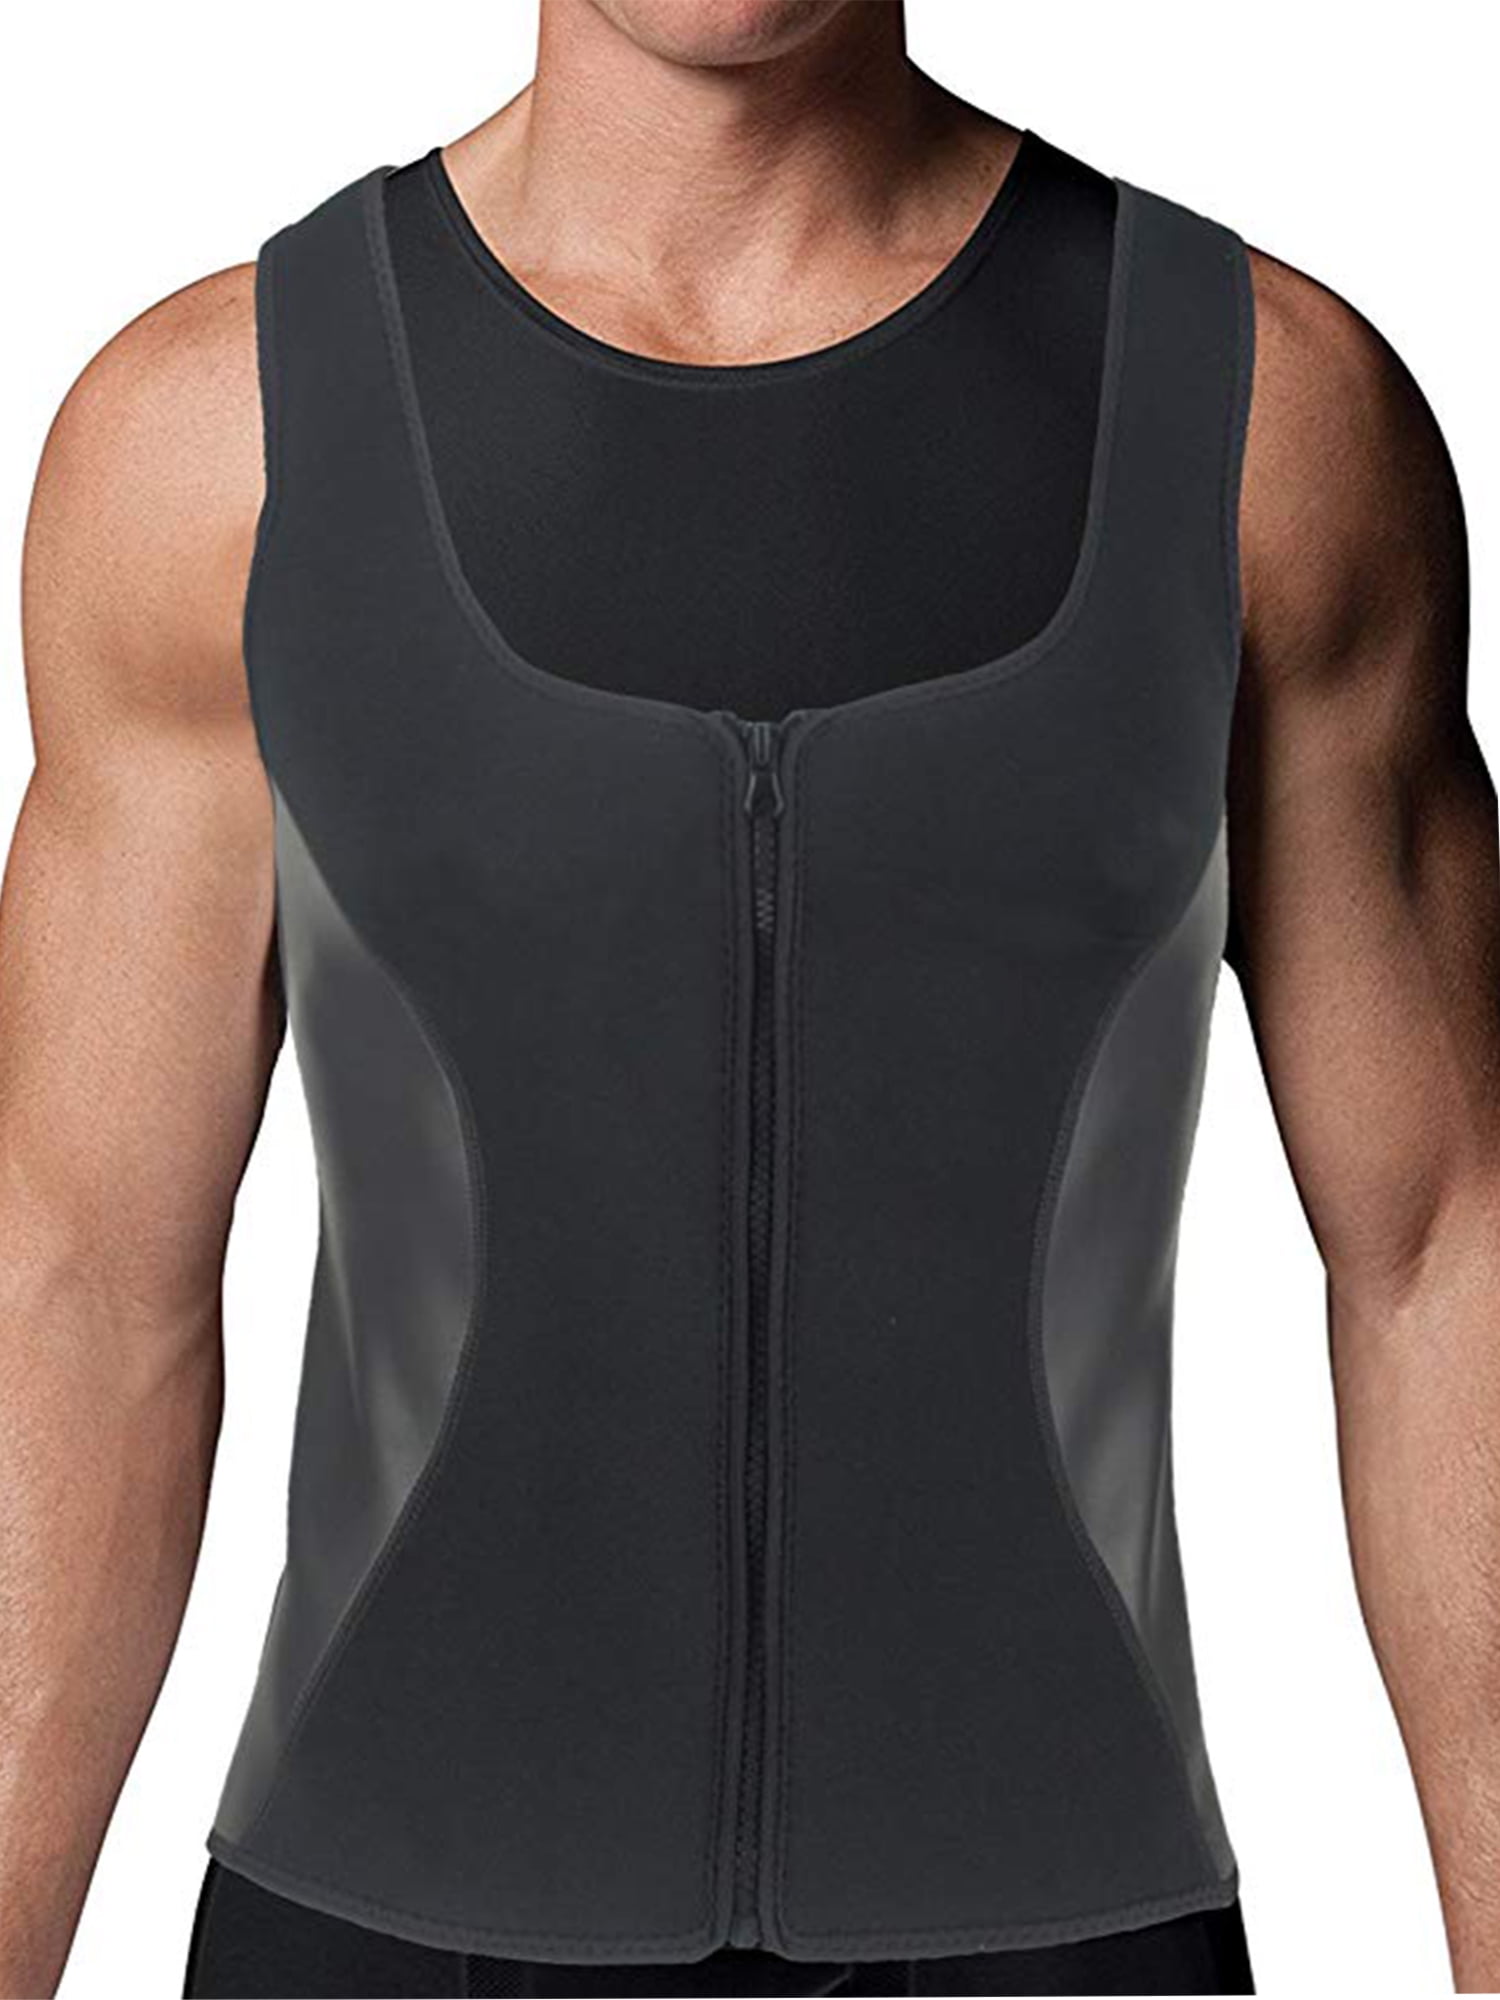 Men Hot Neoprene Workout Sauna Tank Top Zipper Waist Trainer Vest Weight Compression Shirt Gym Clothes Corset 